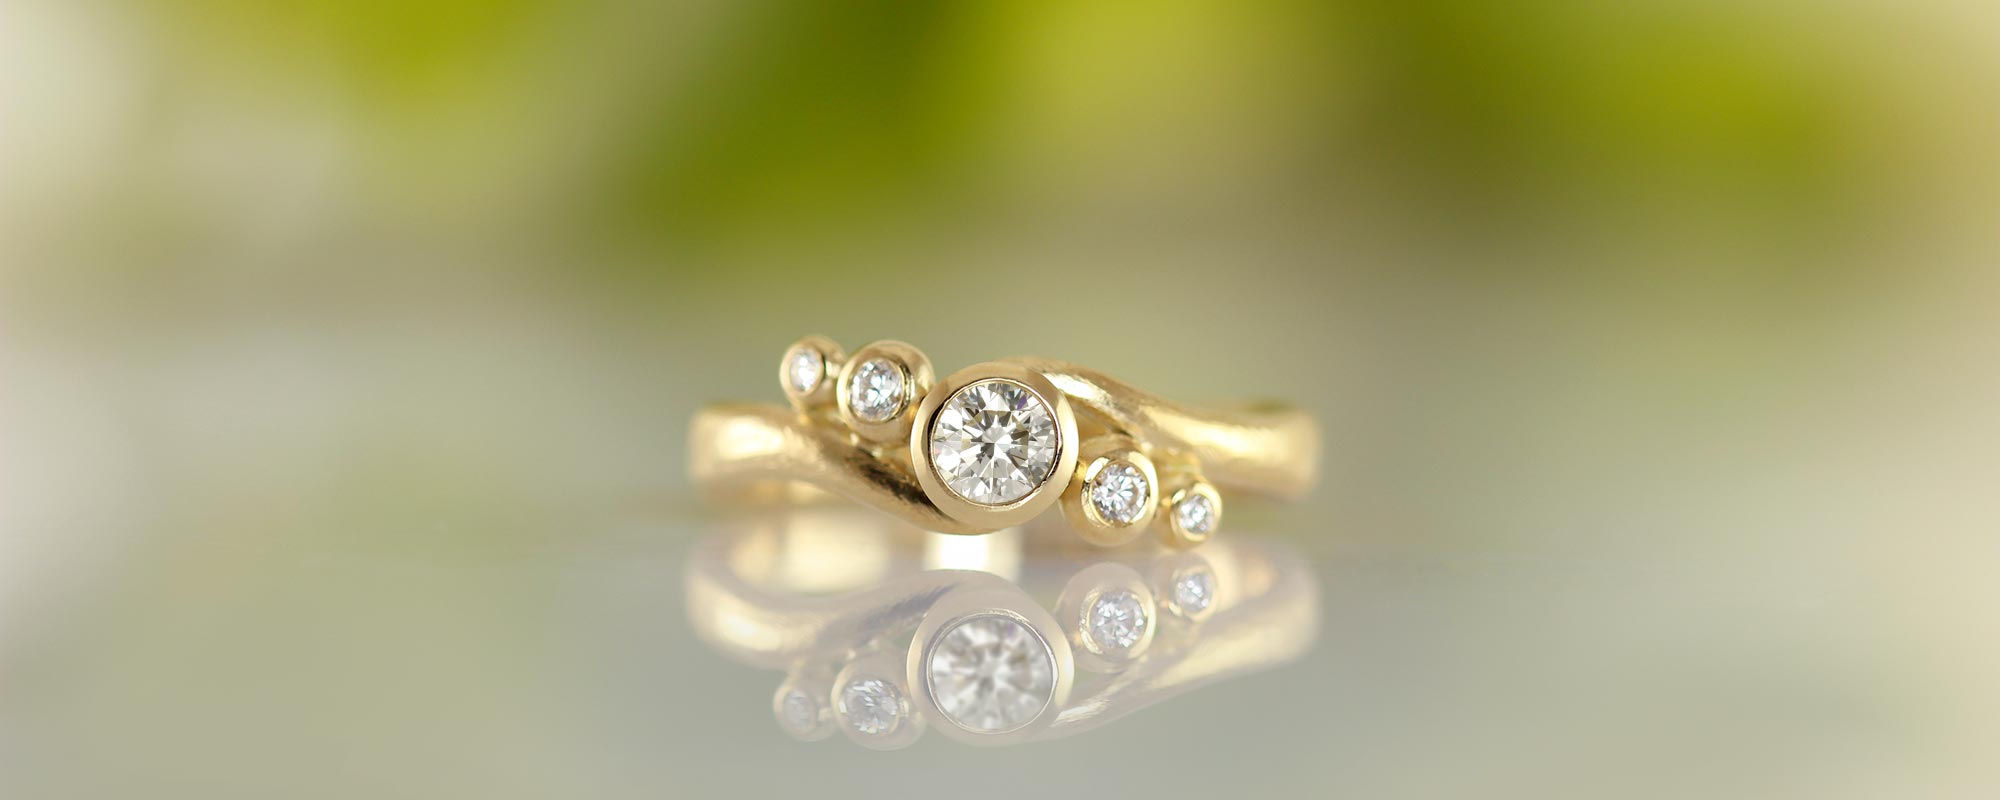 Håndlavede ringe - Unikke smykker hos Castens 5-stens Embrace ring